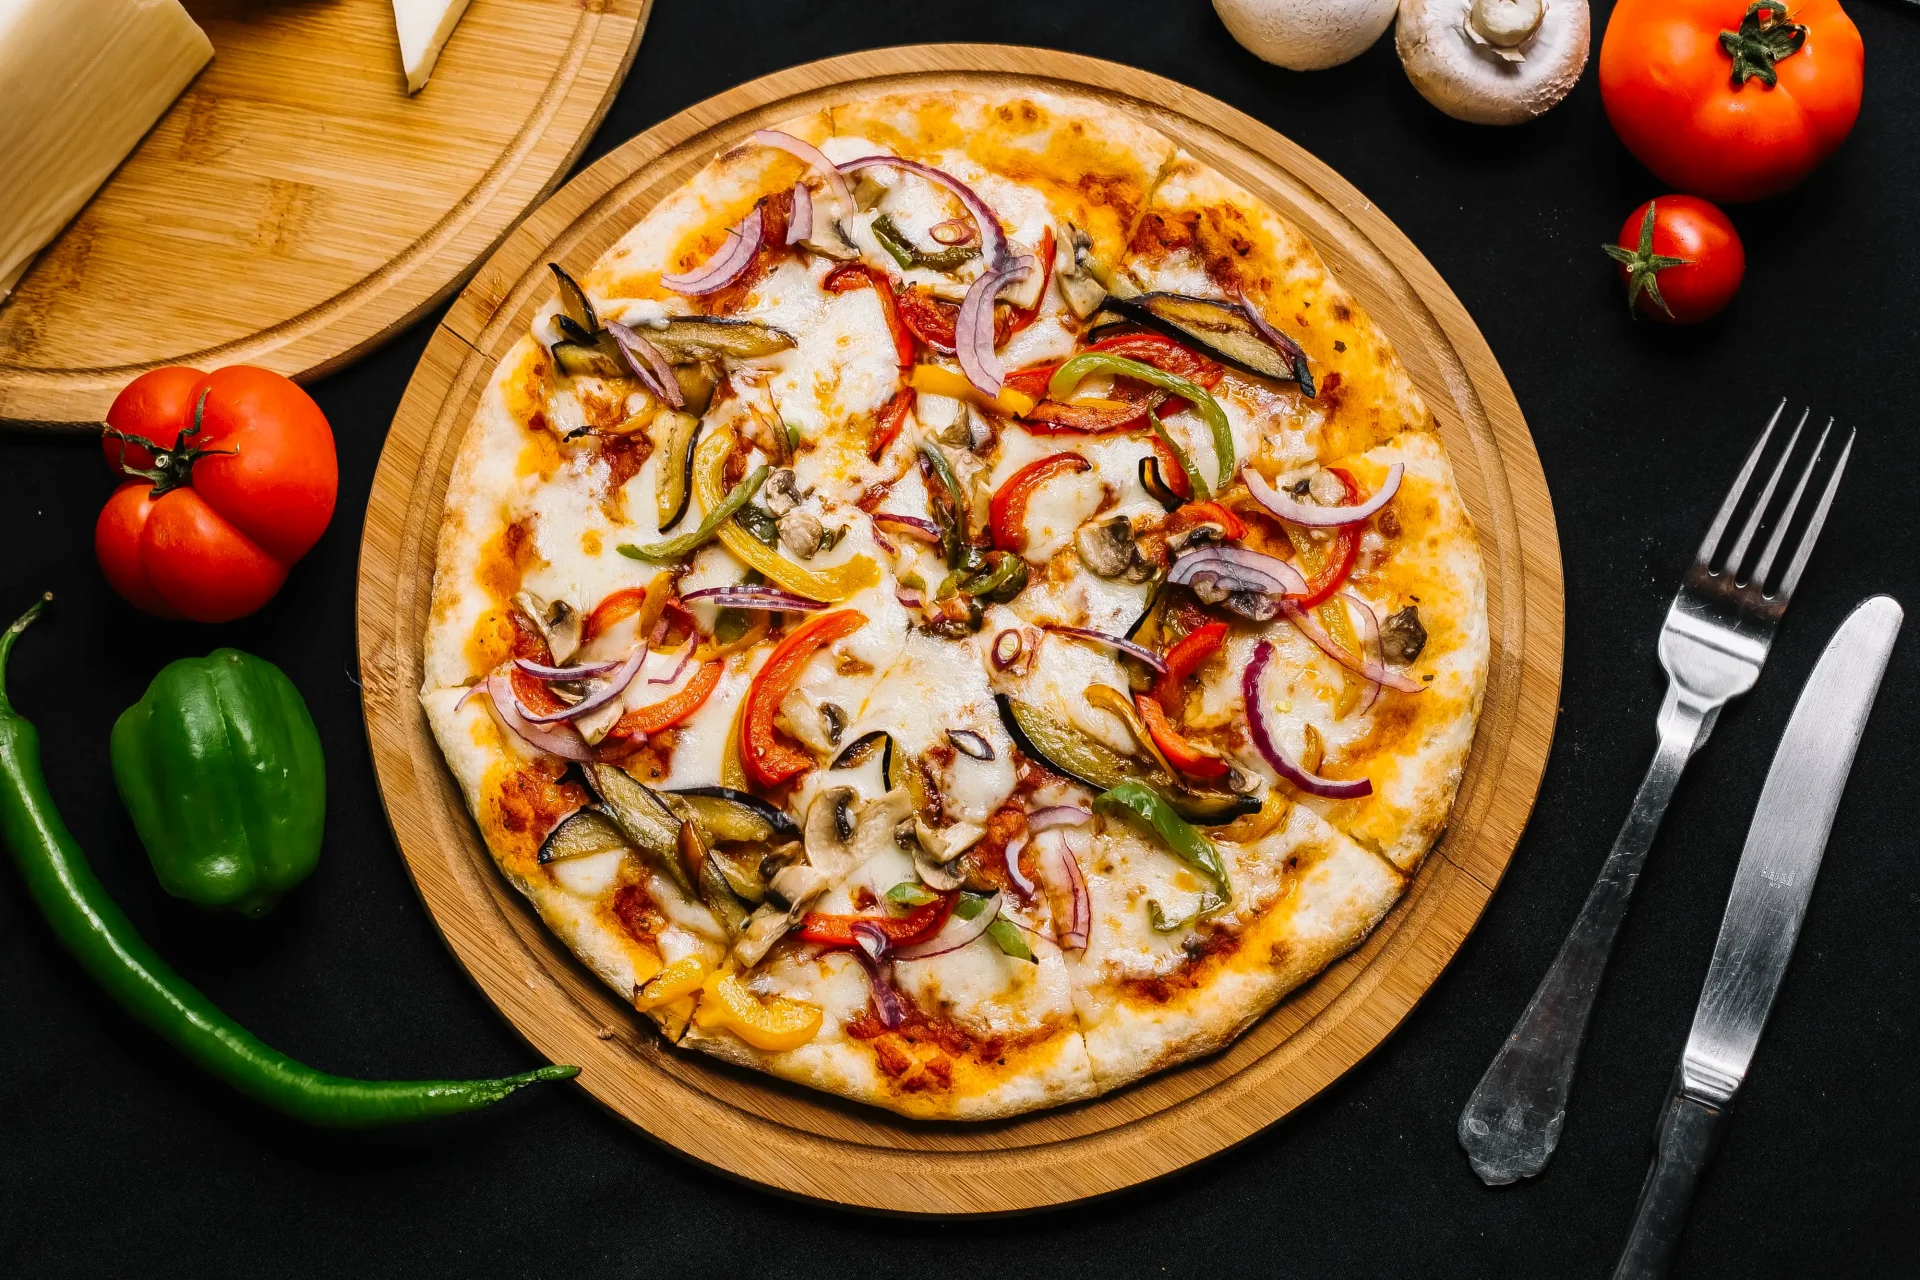 Perfect Pizza Size: 12 inch vs 15 inch pizza